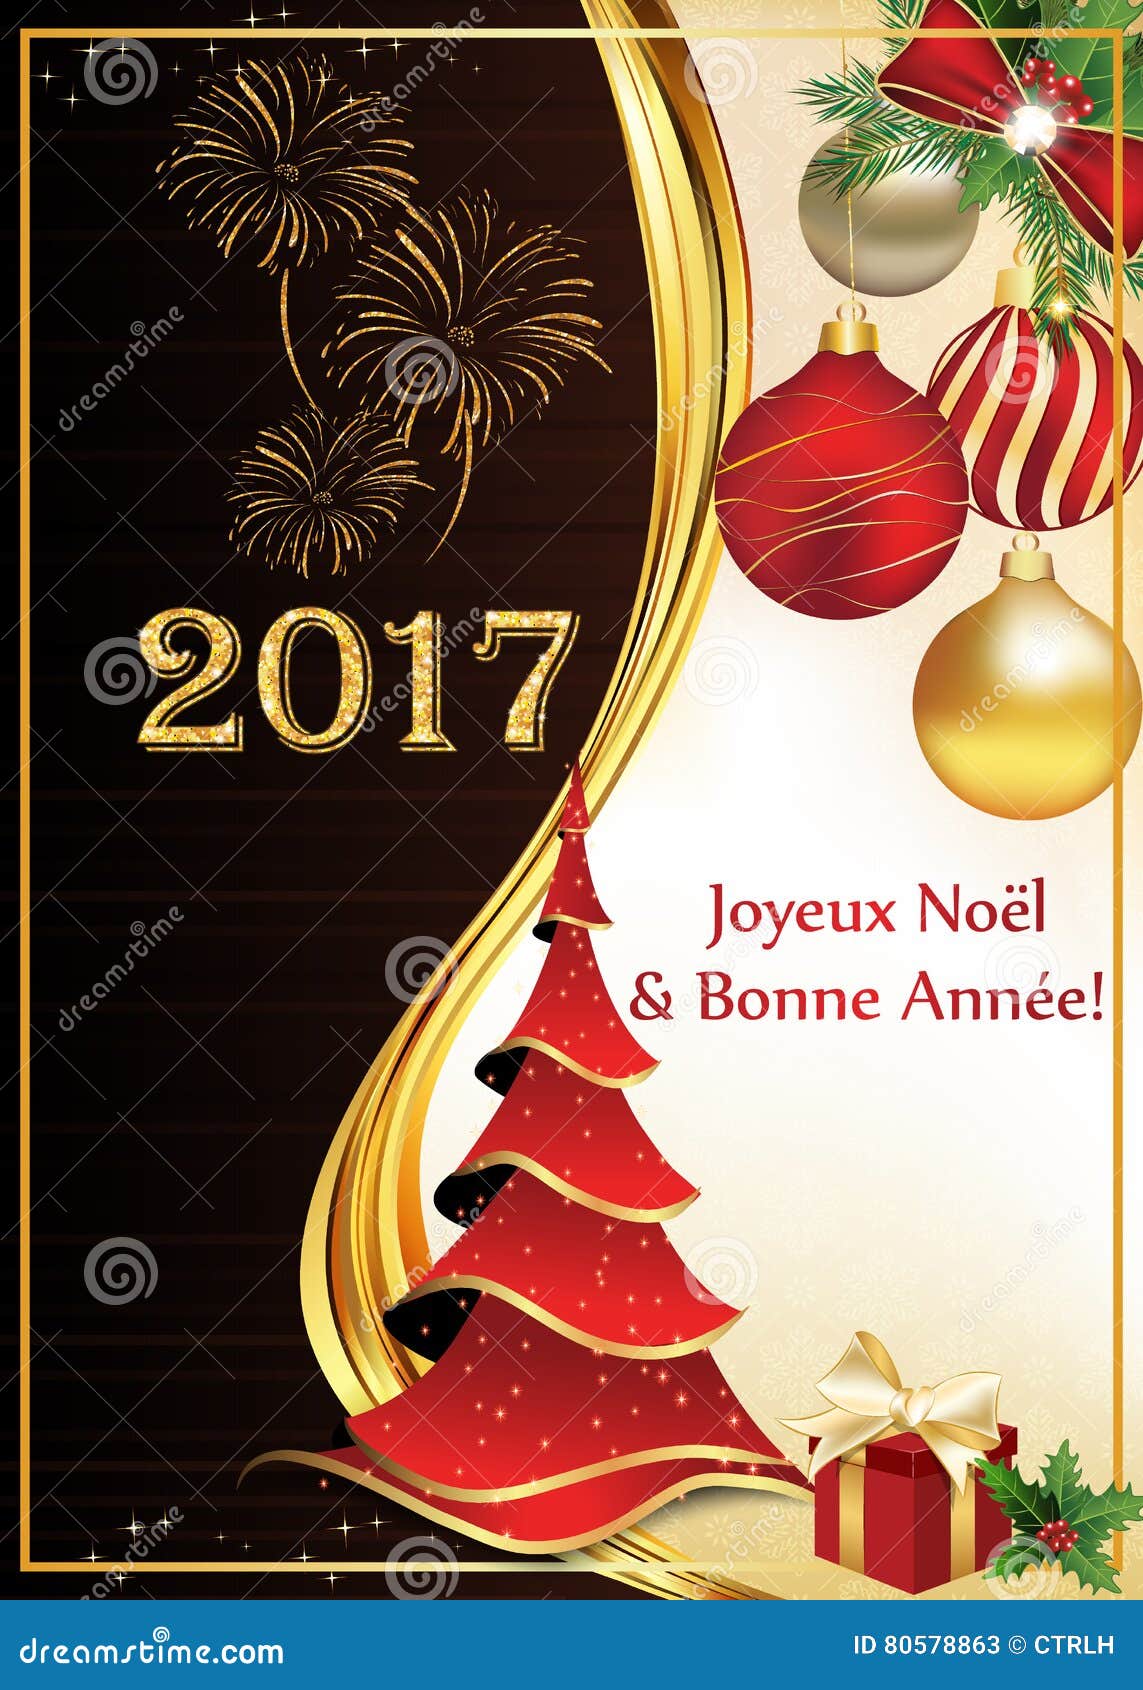 Buon Natale Francese.Cartolina D Auguri Del Buon Anno E Di Buon Natale In Francese Illustrazione Di Stock Illustrazione Di Bacca Francese 80578863